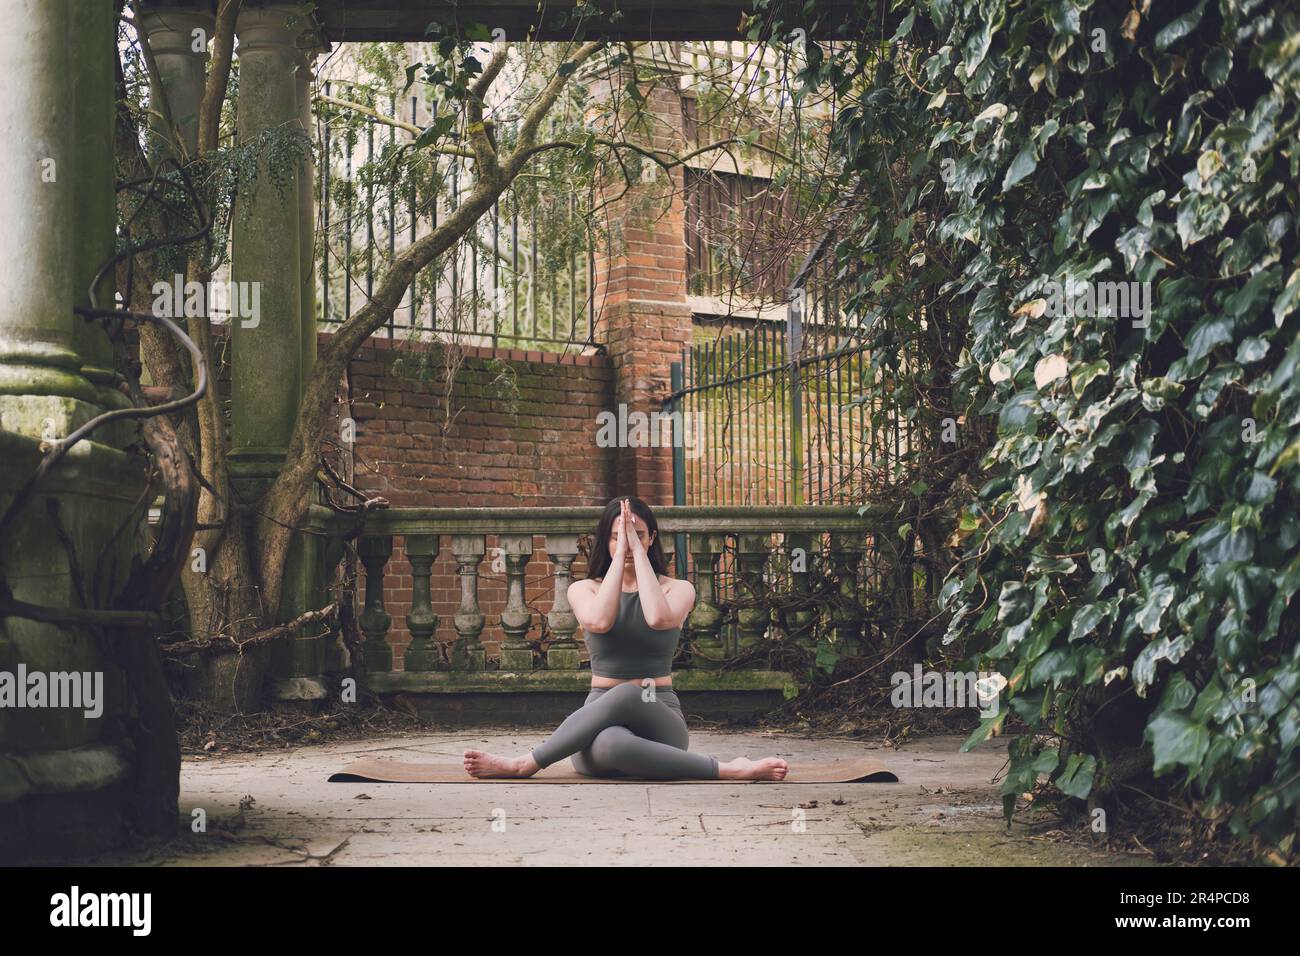 Enseignante de yoga pratiquant dans une terrasse d'un jardin historique avec végétation, colonnes en pierre et balustrade, tenue verte. Gomukhasana (Cow face po Banque D'Images